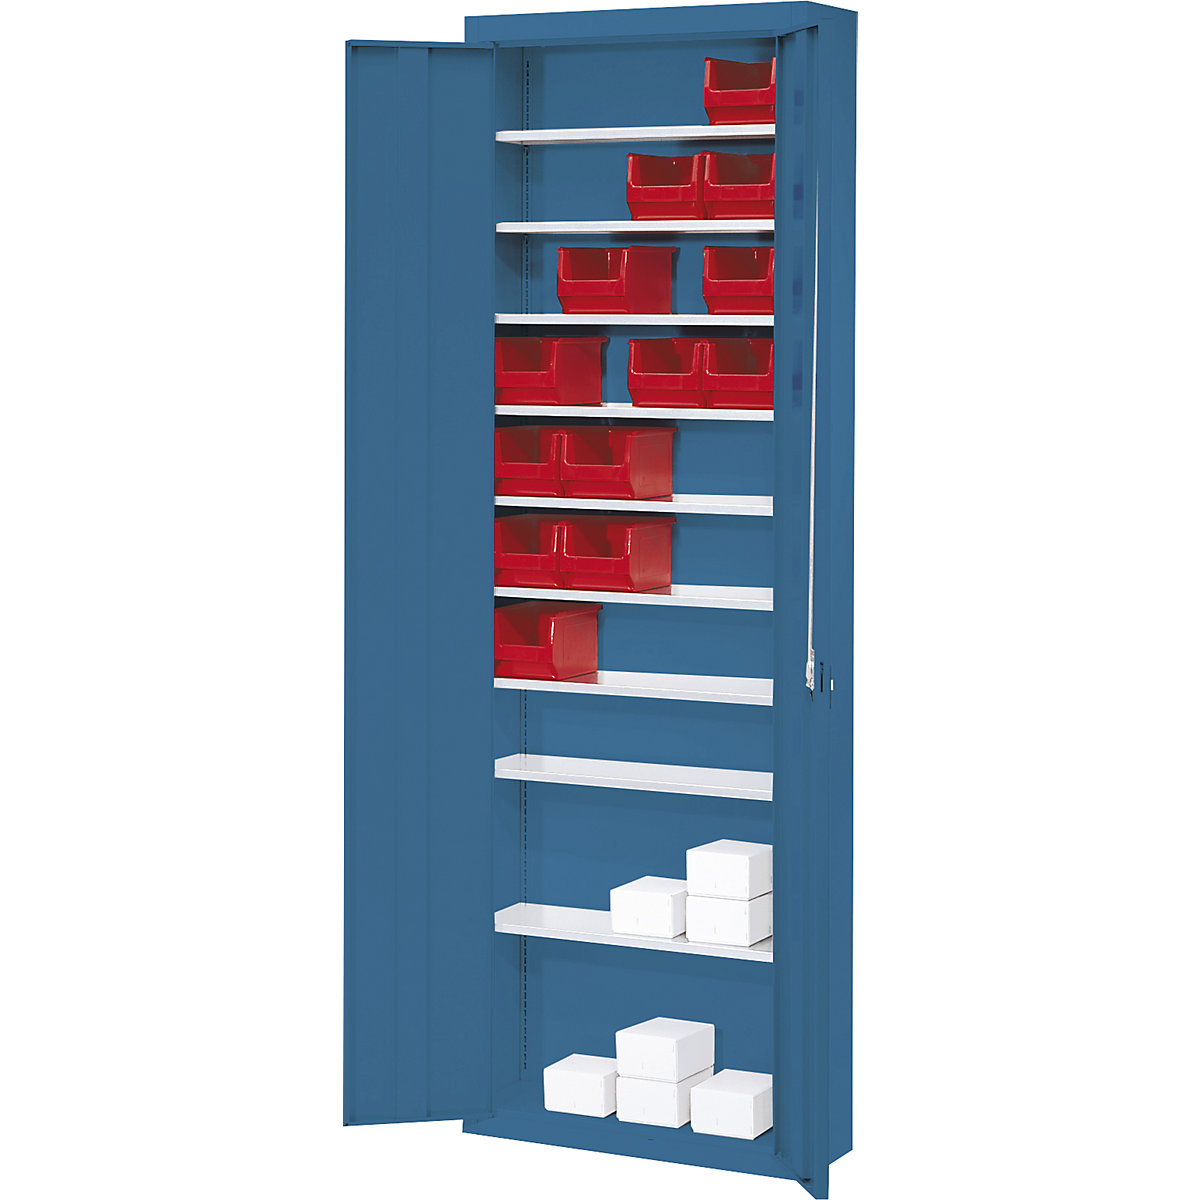 Armario-almacén, sin cajas visualizables – mauser (Imagen del producto 2)-1